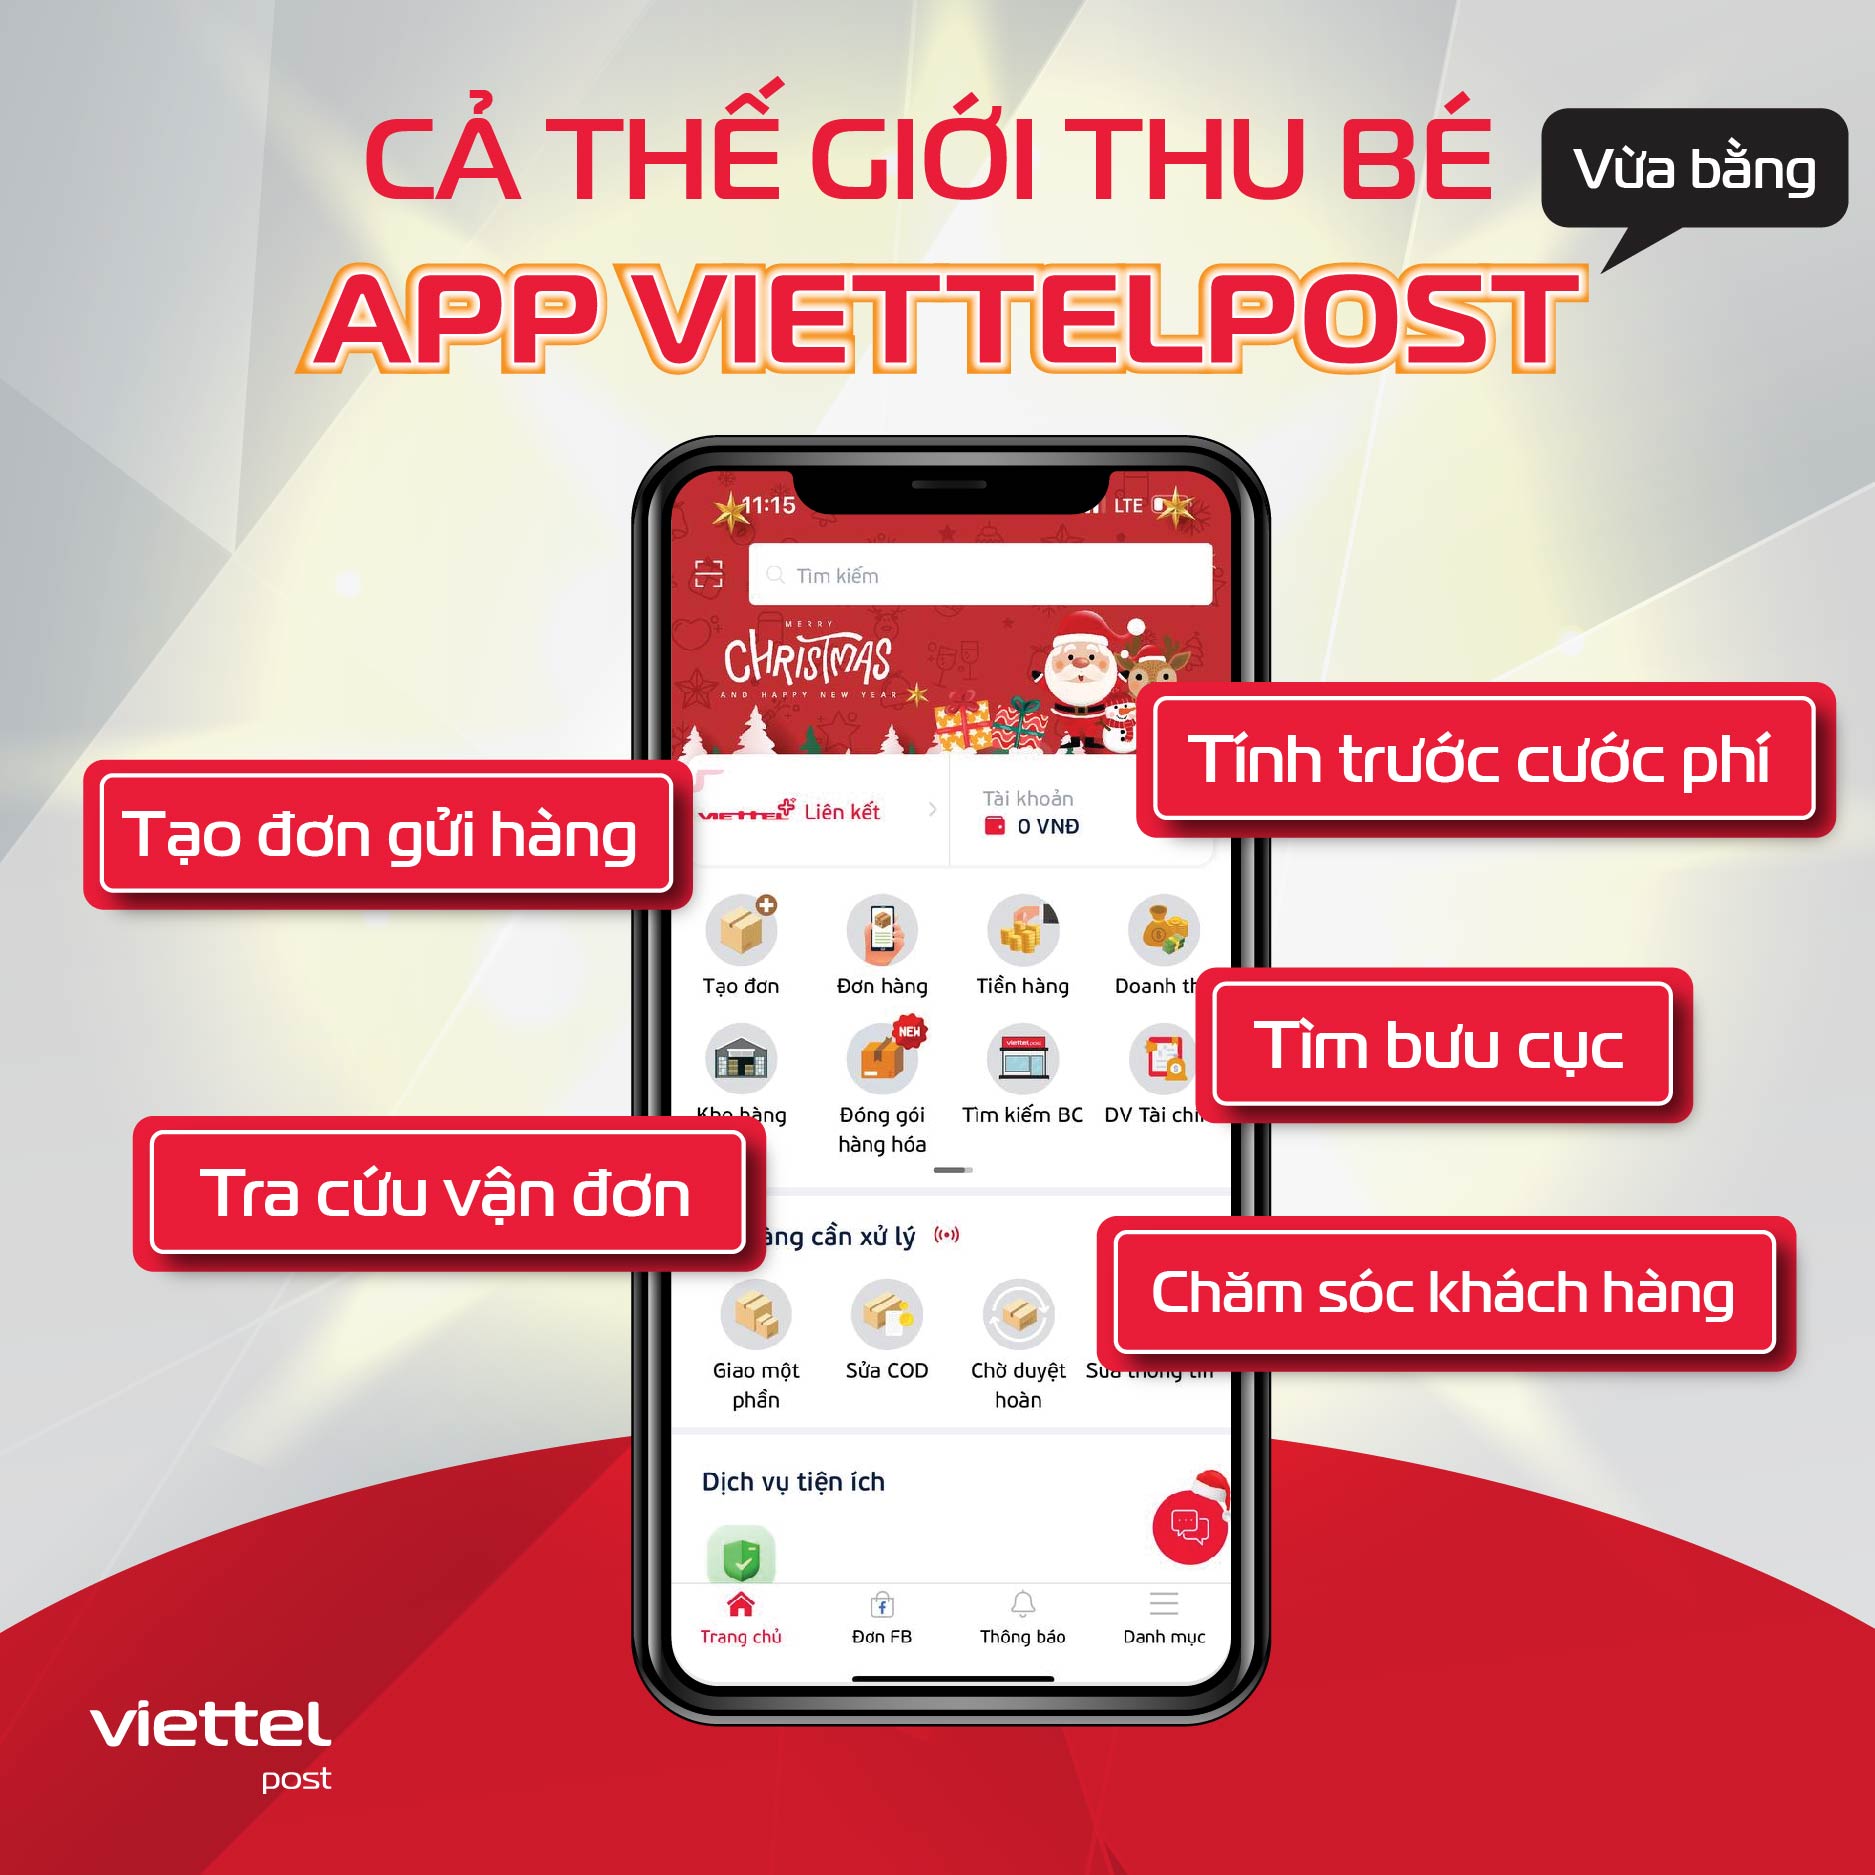 Ứng dụng Viettel Post: Đổi mới sáng tạo không ngừng để tối giản thao tác, tối ưu trải nghiệm cho người tiêu dùng Việt - Ảnh 1.